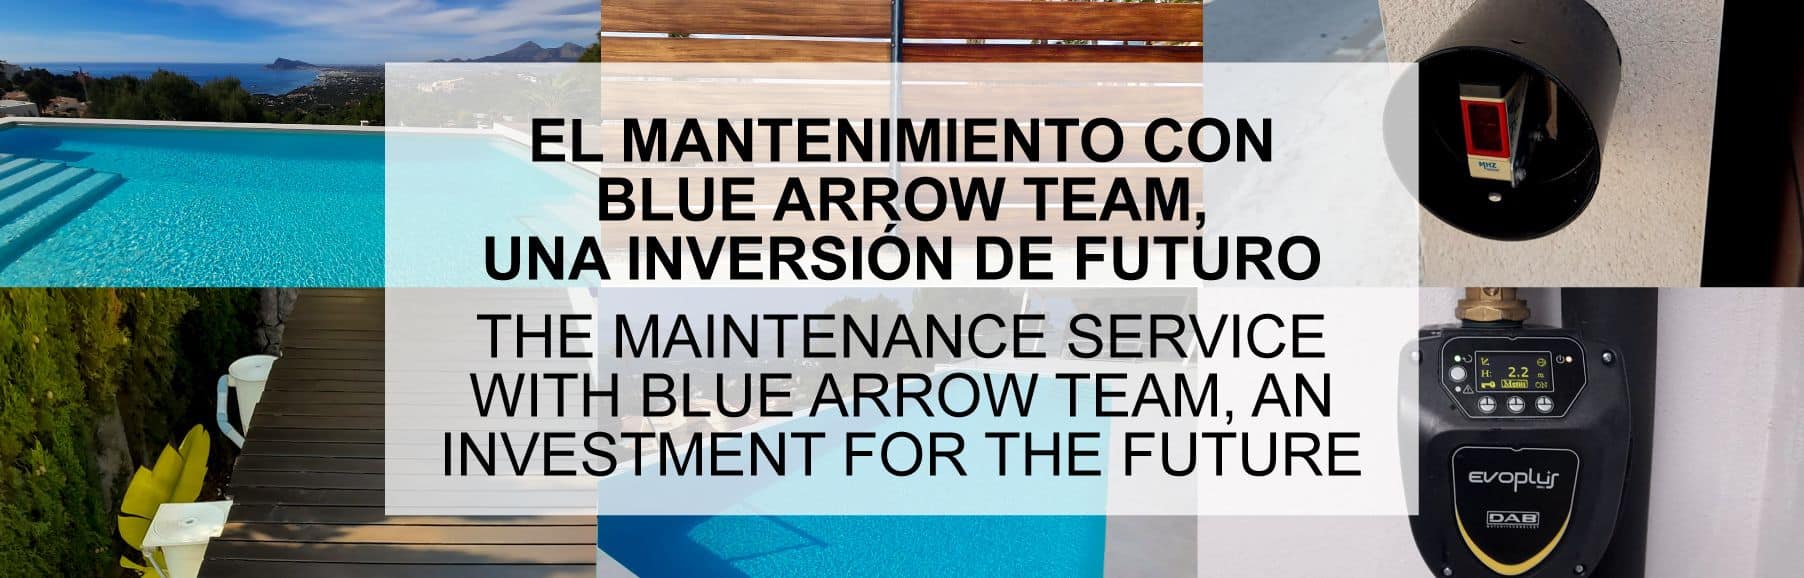 El mantenimiento con Blue Arrow Team, una inversión de futuro